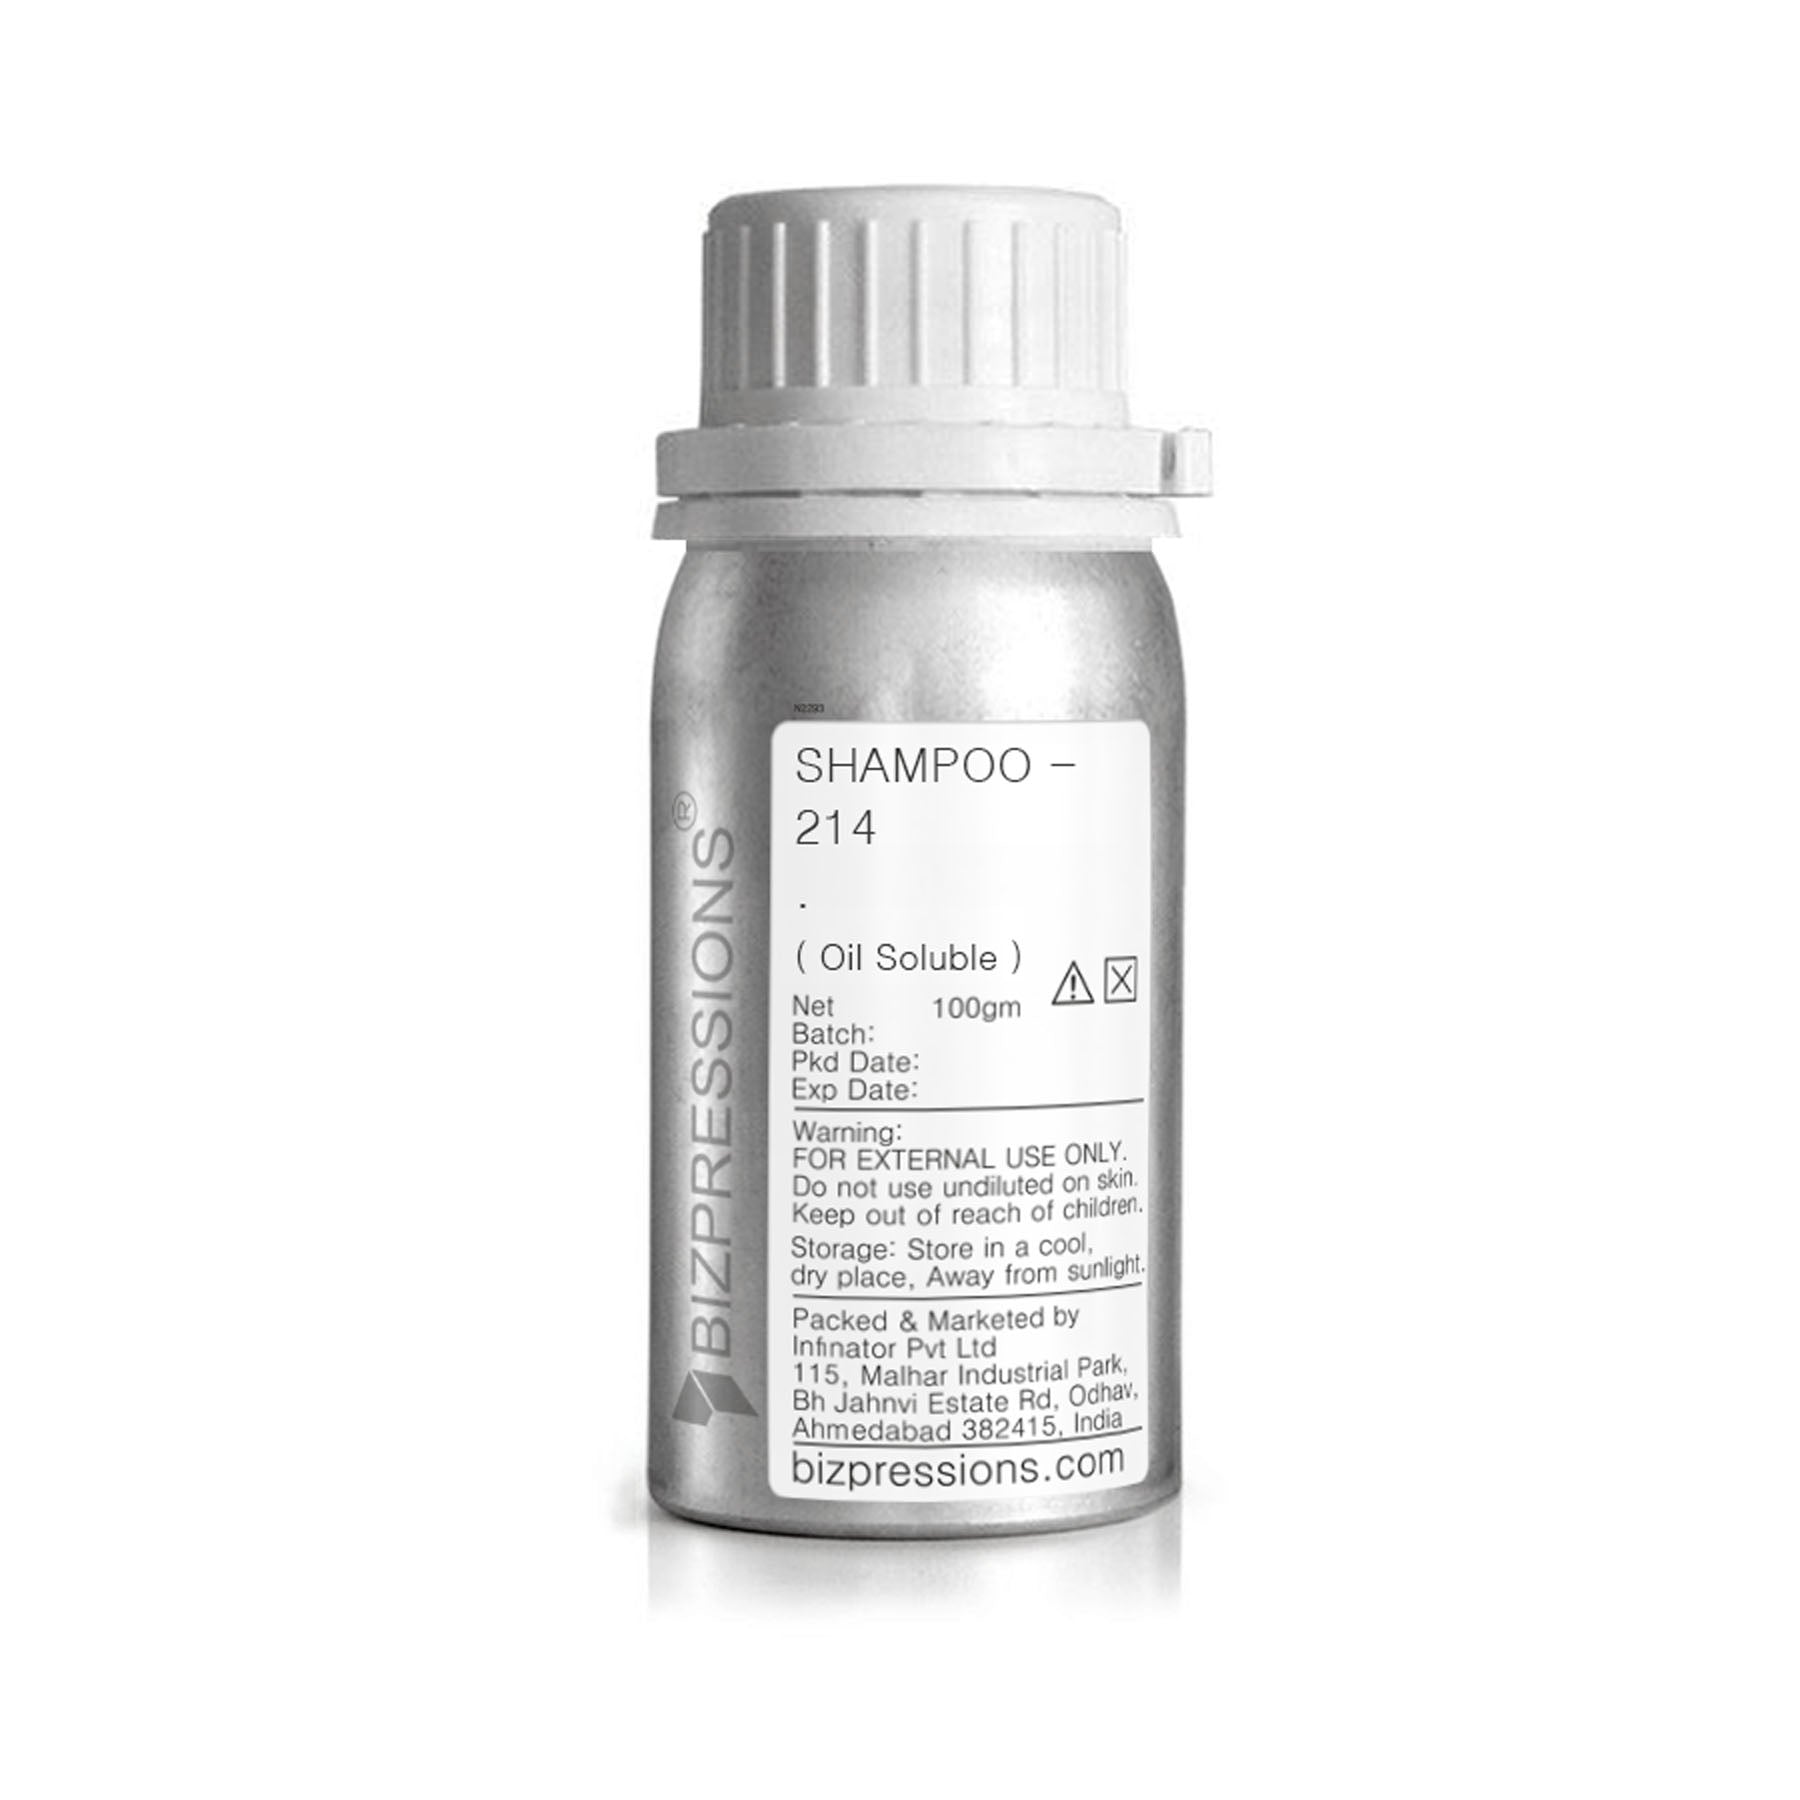 SHAMPOO - 214 - Fragrance ( Oil Soluble )